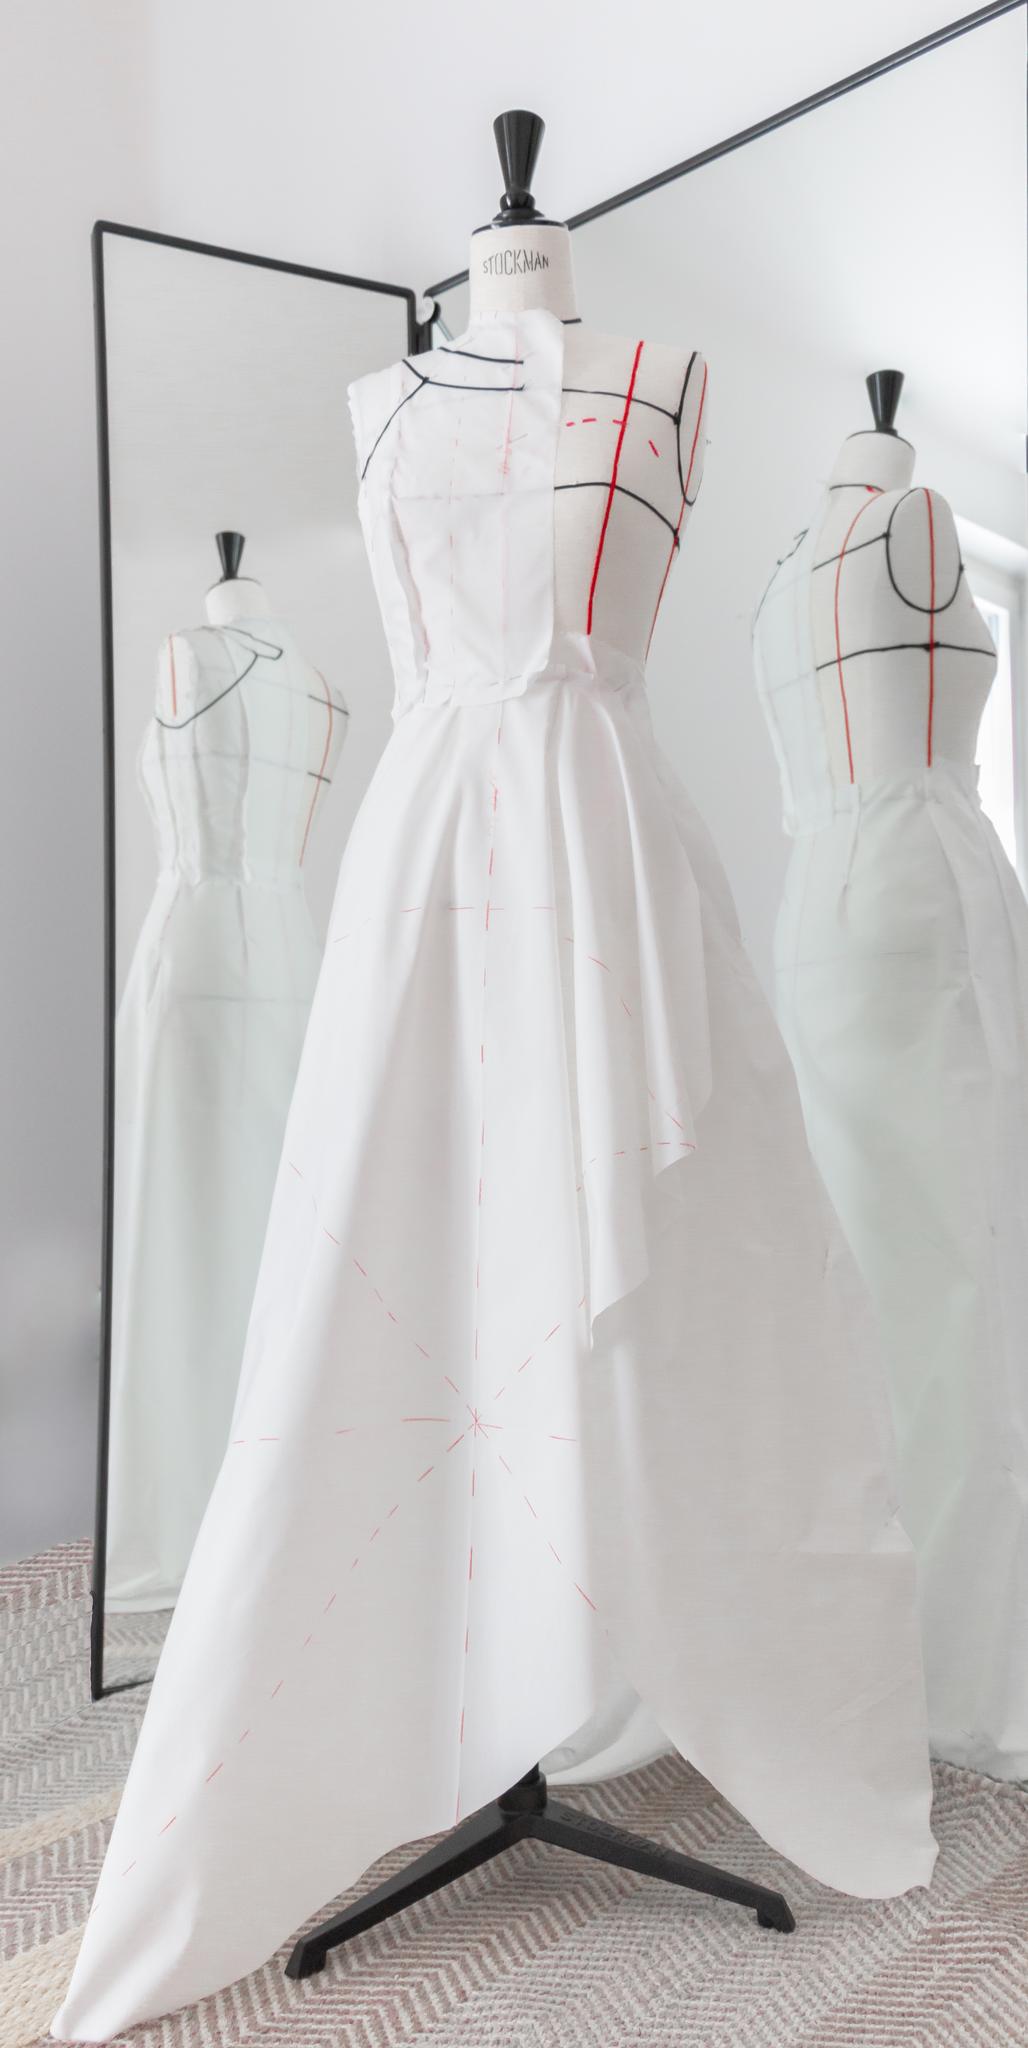 Mannequin couture Créatrice Mode Lausanne Vevey